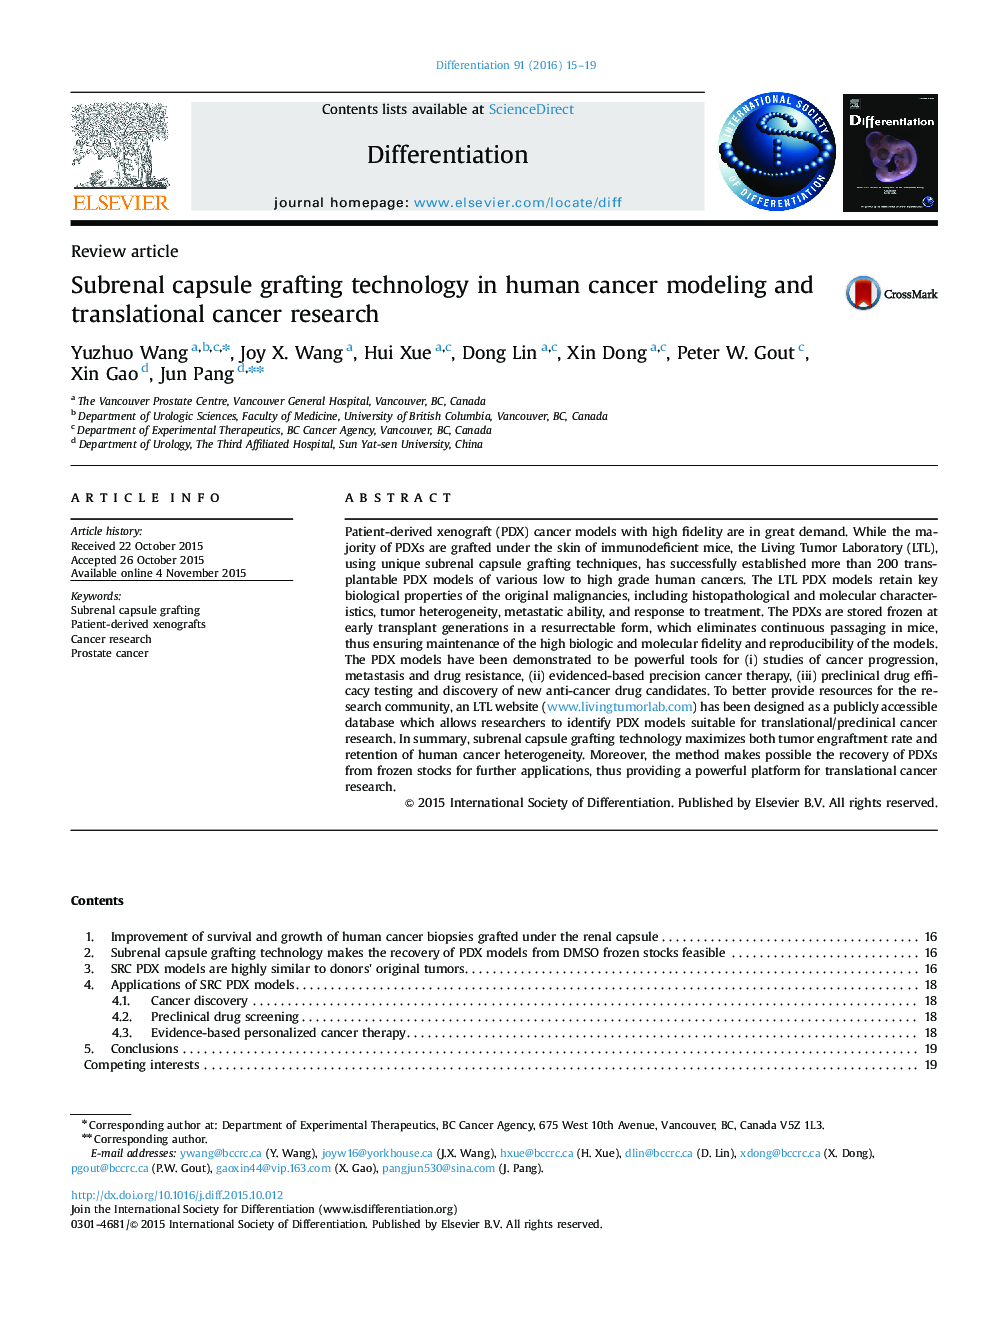 تکنولوژی پیوند کپسول Subrenal در مدلسازی سرطان انسانی و تحقیق سرطان ترجمه ای